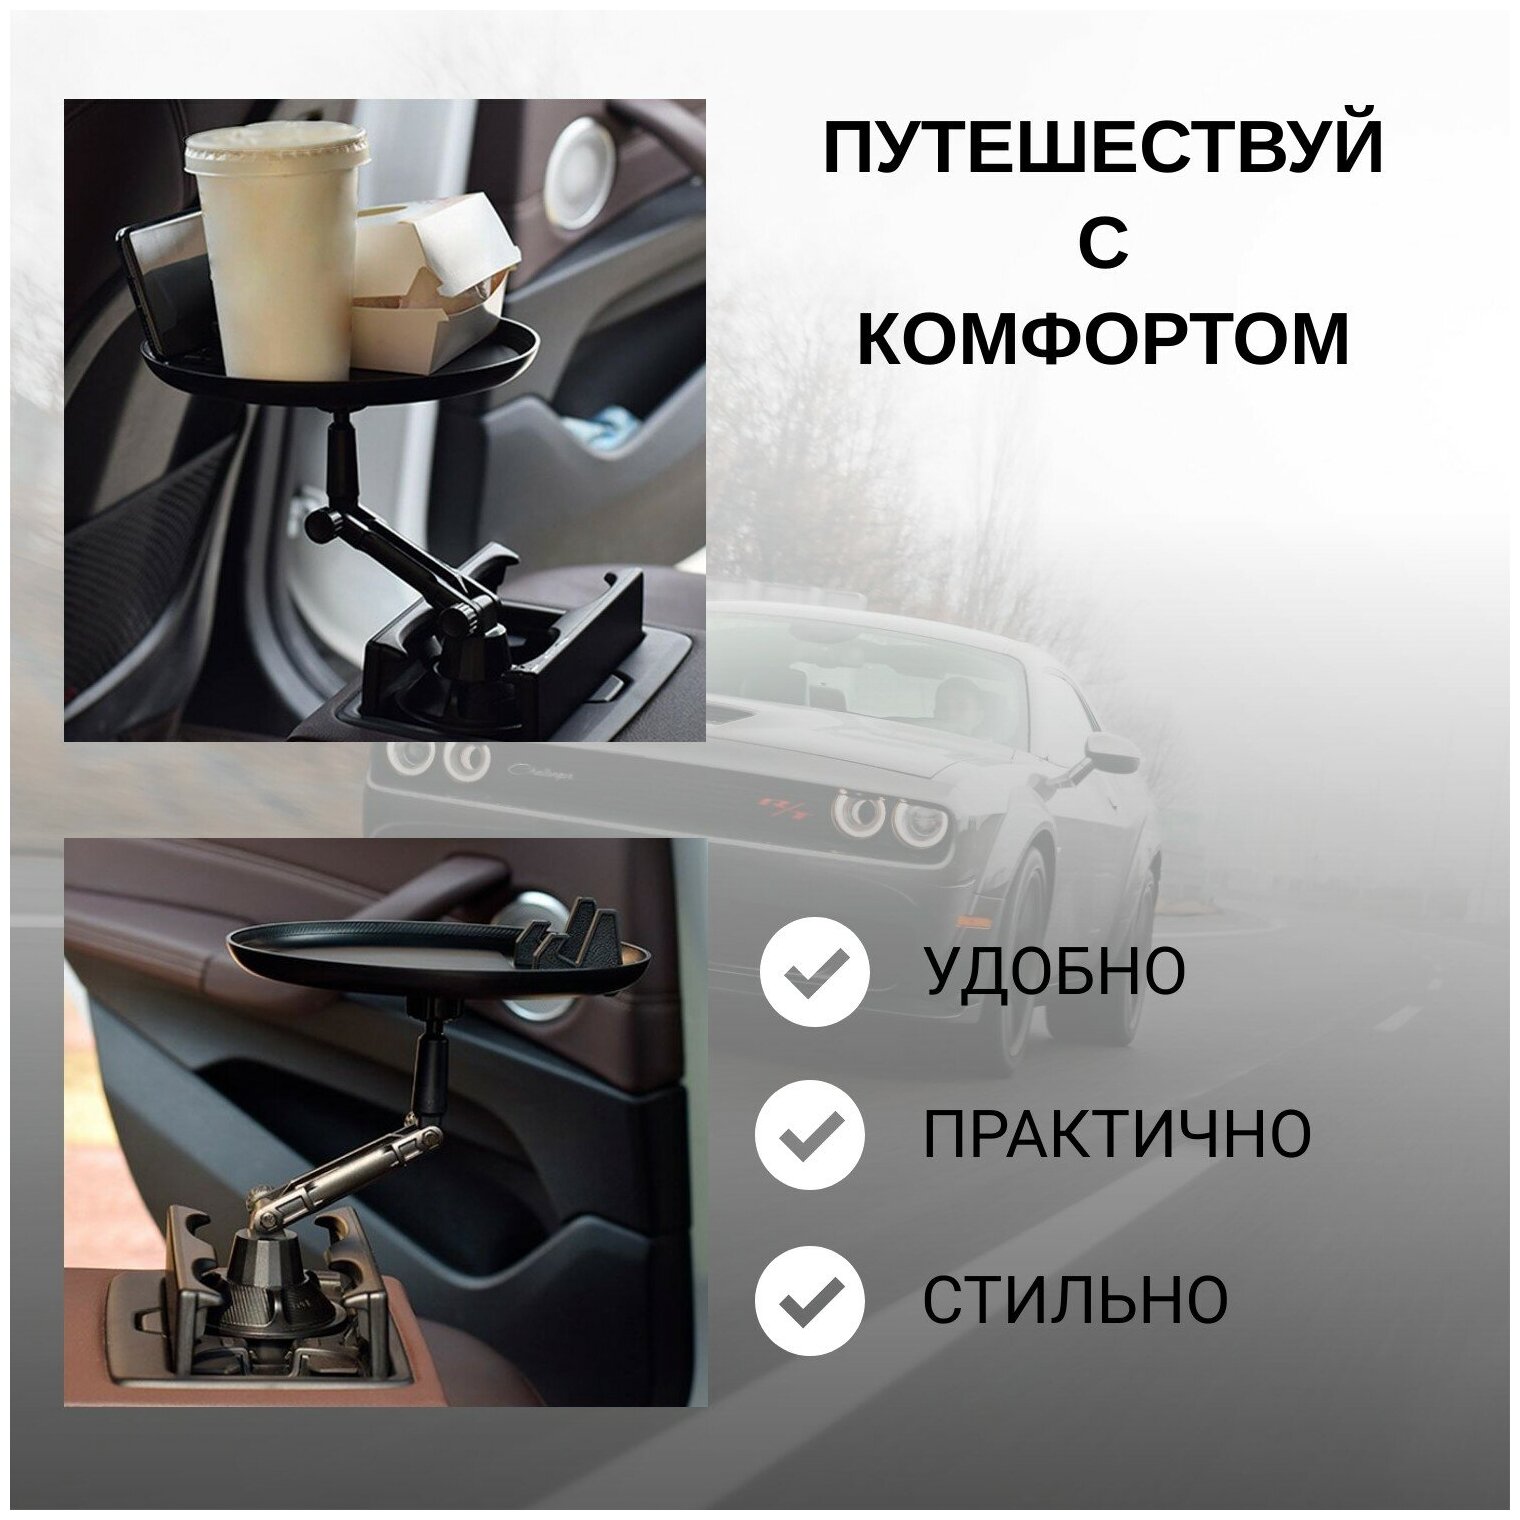 Столик автомобильный для еды, бургеров и напитков в дорогу (с держателем для телефона), цвет черный